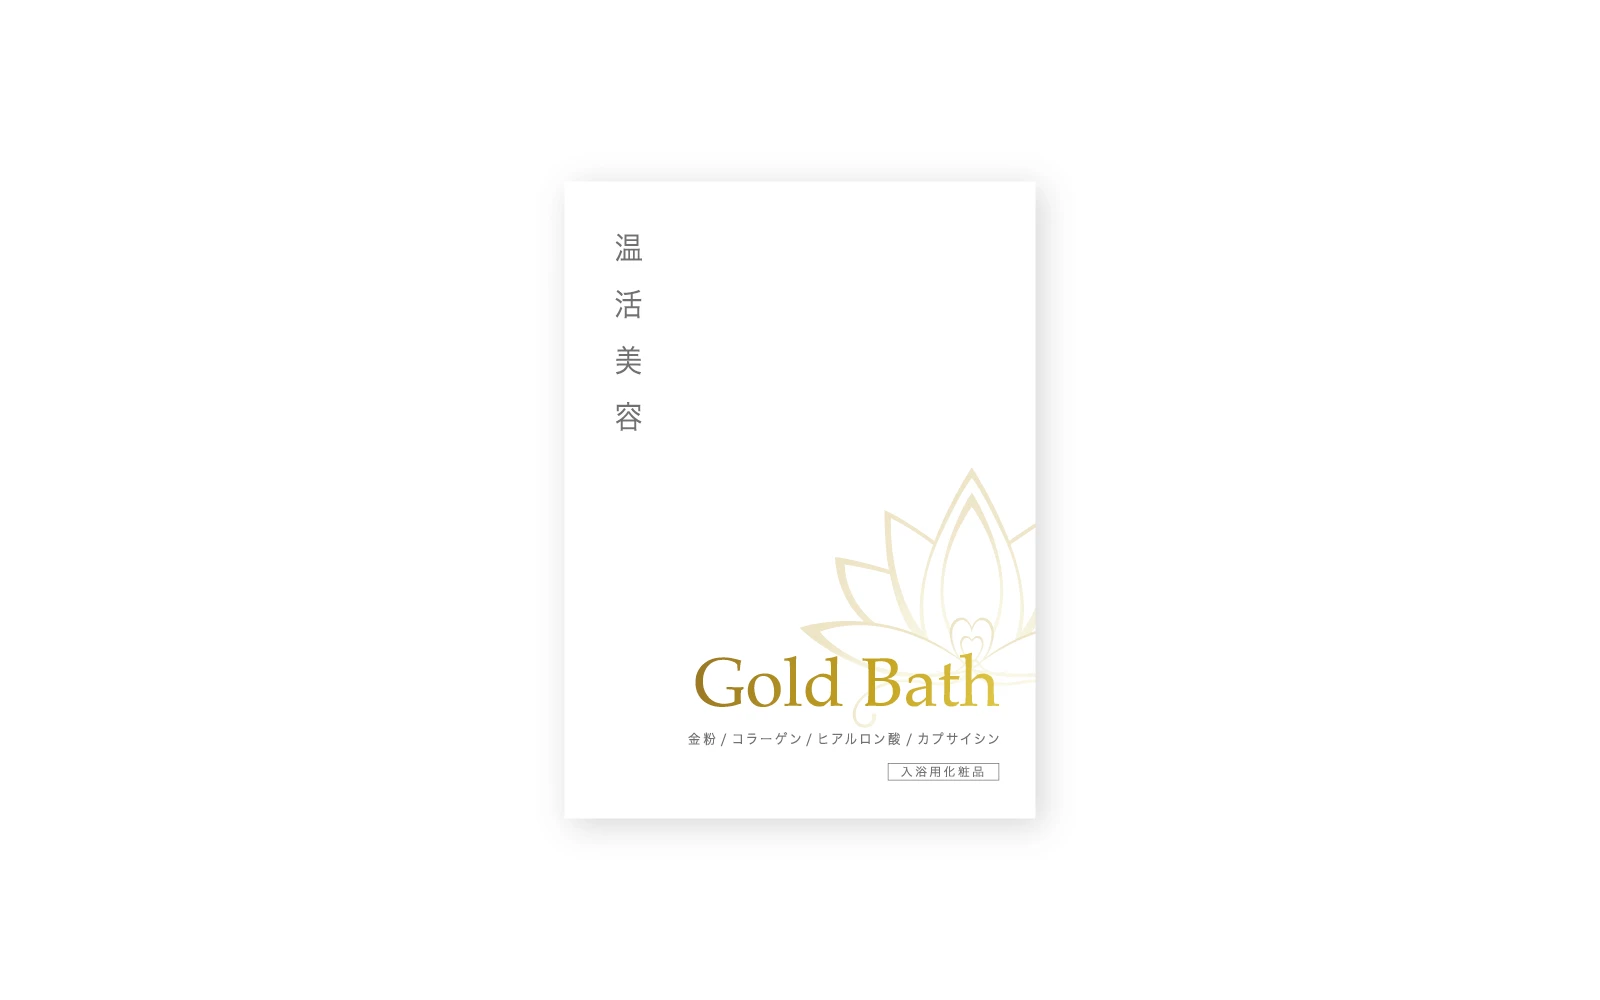 株式会社DEWAコーポレーション / GoldBathパッケージ